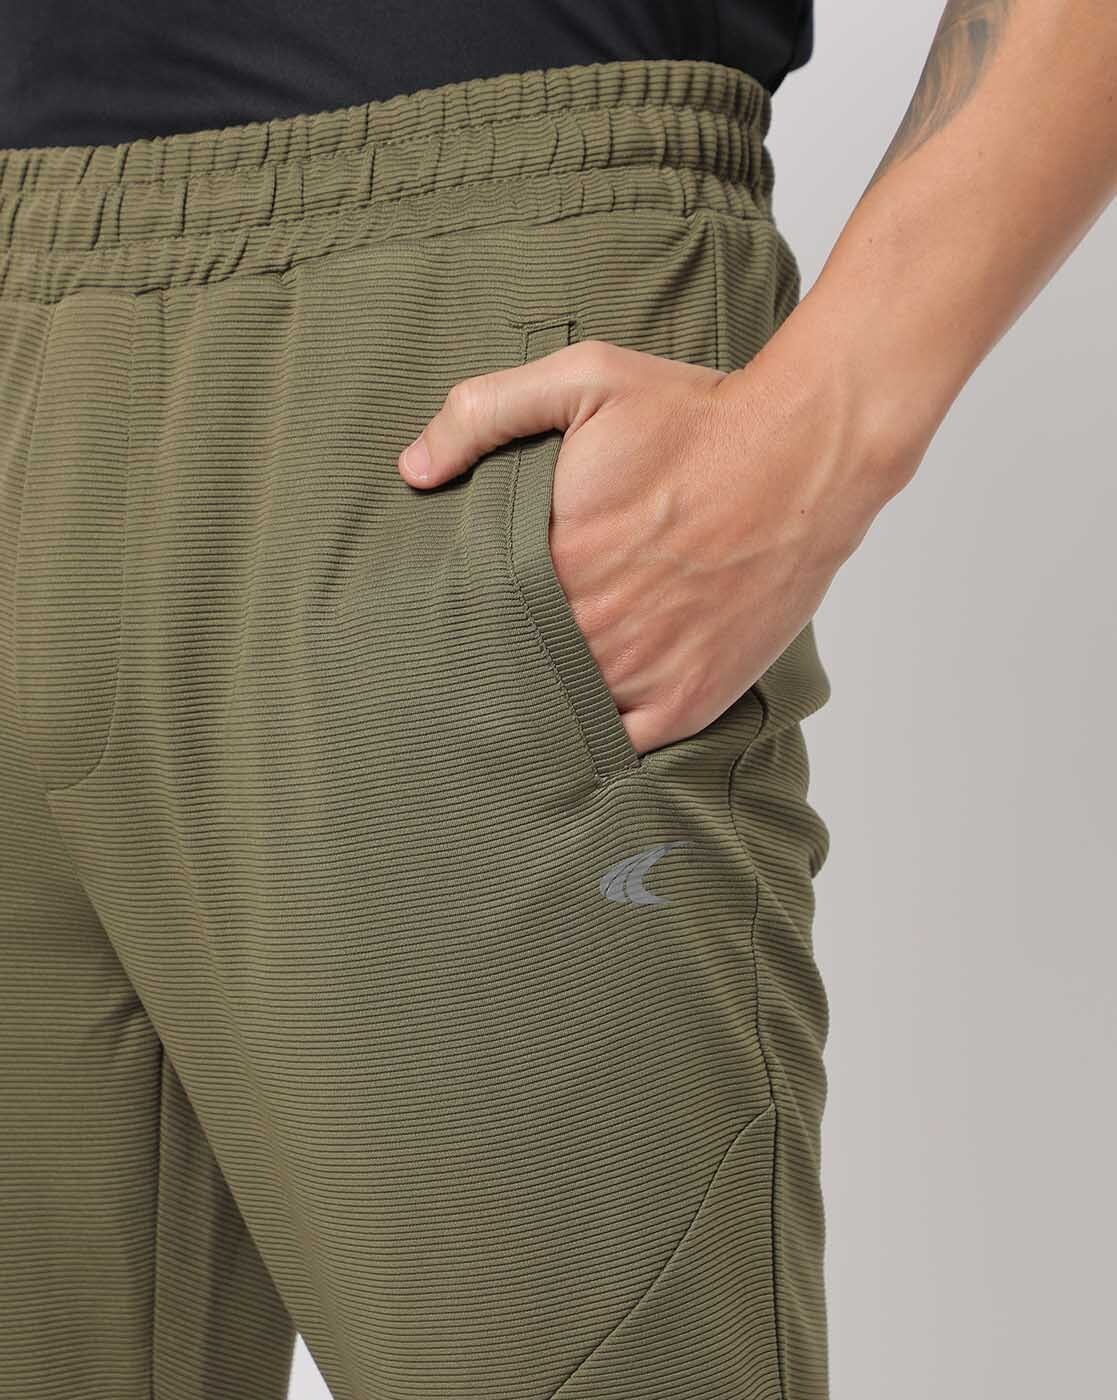 Lycra Olive Green Pants For Men's Under 400